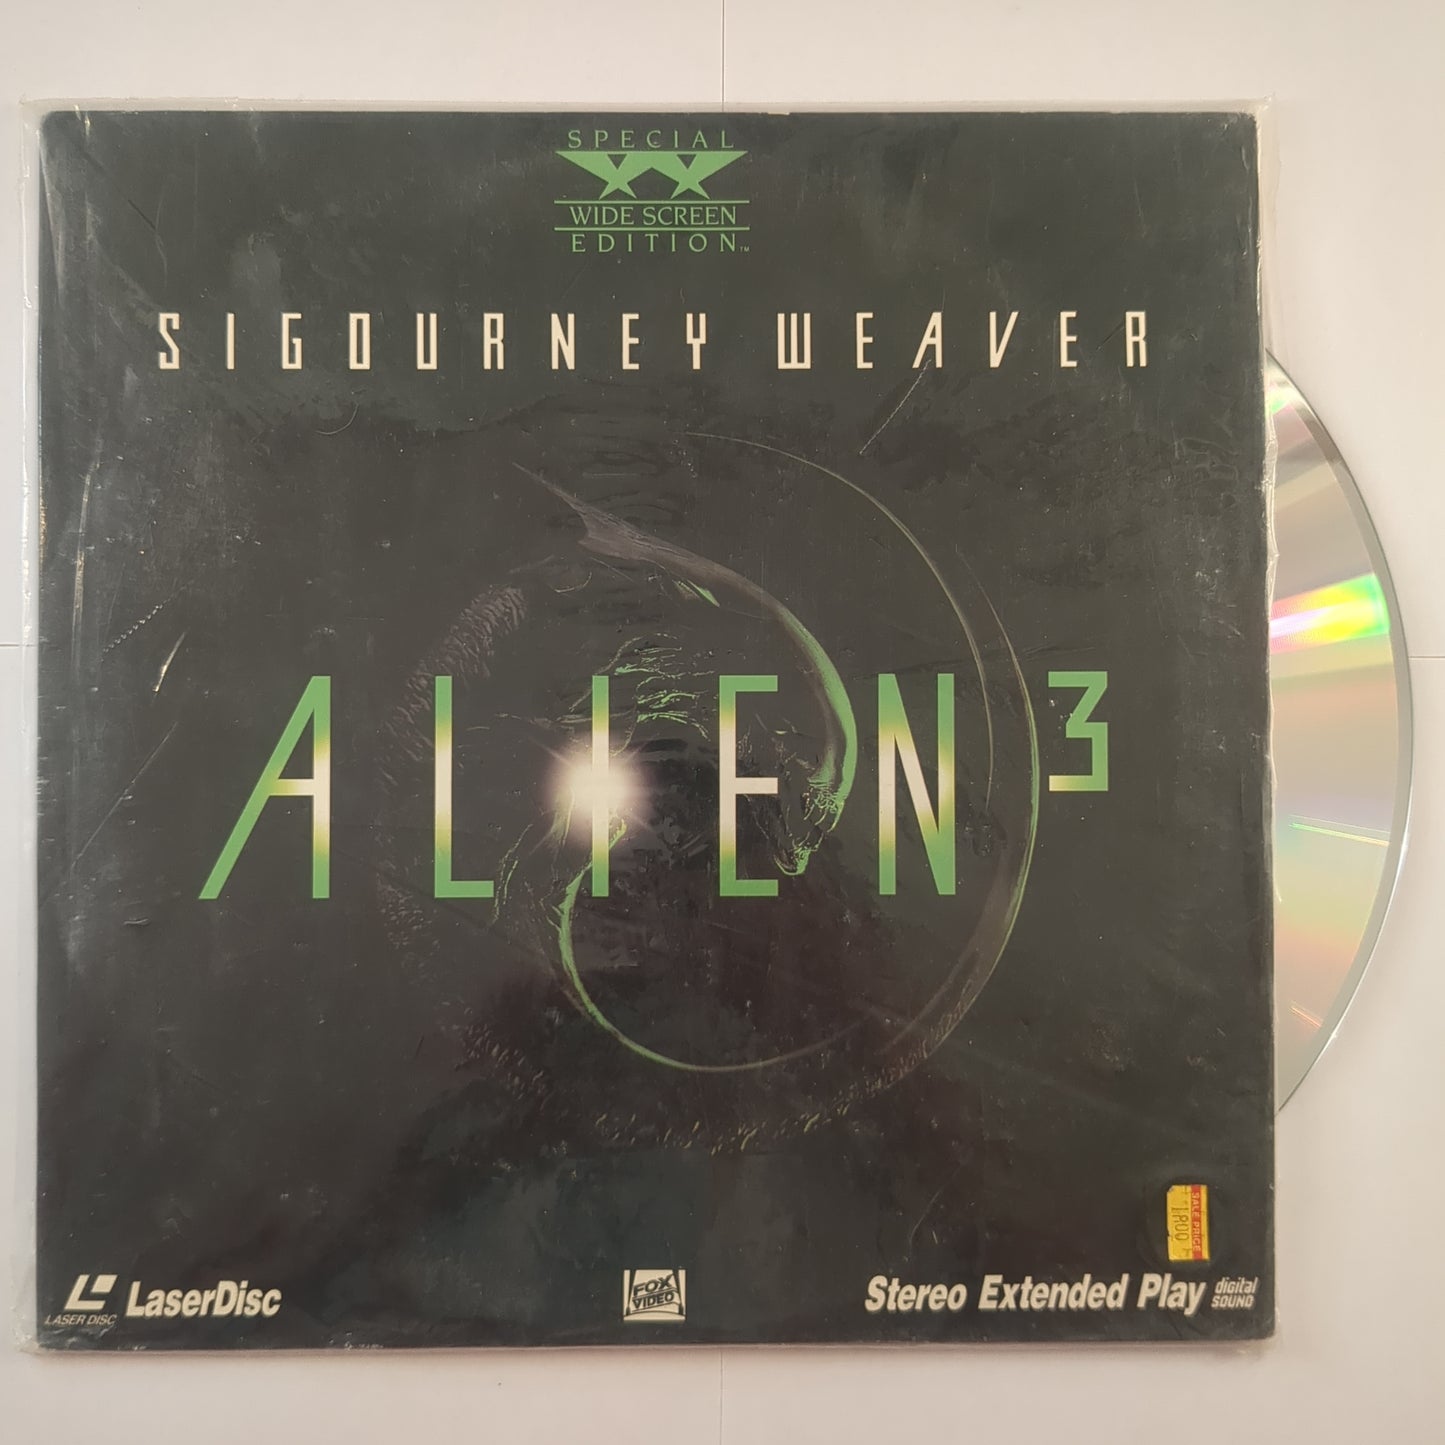 'Alien 3'